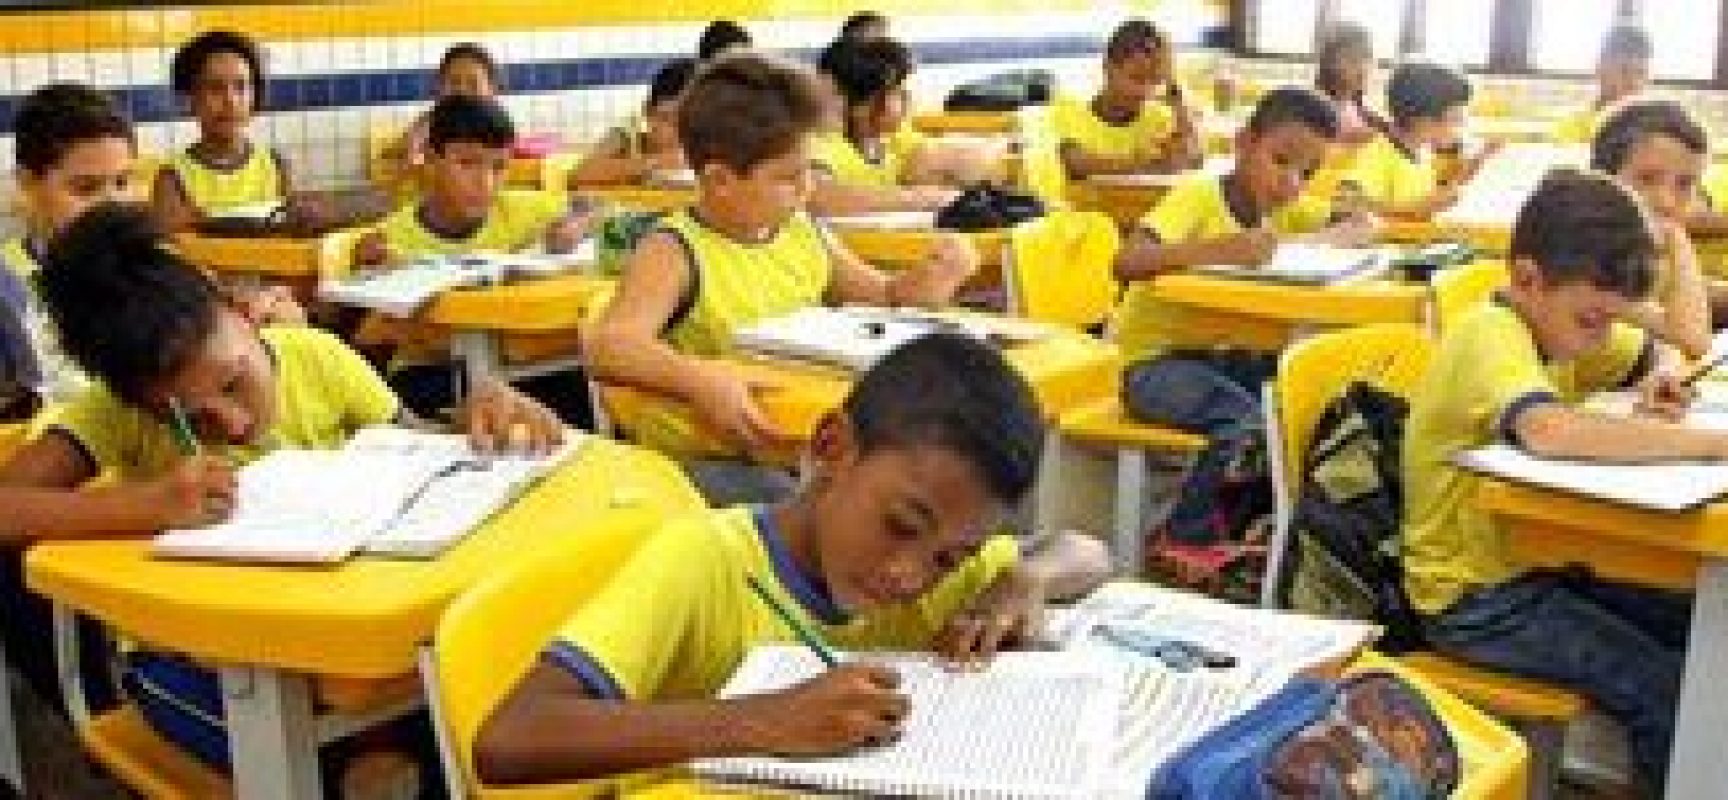 Modelos ideais de educação mobilizaram brasileiros ao longo da história